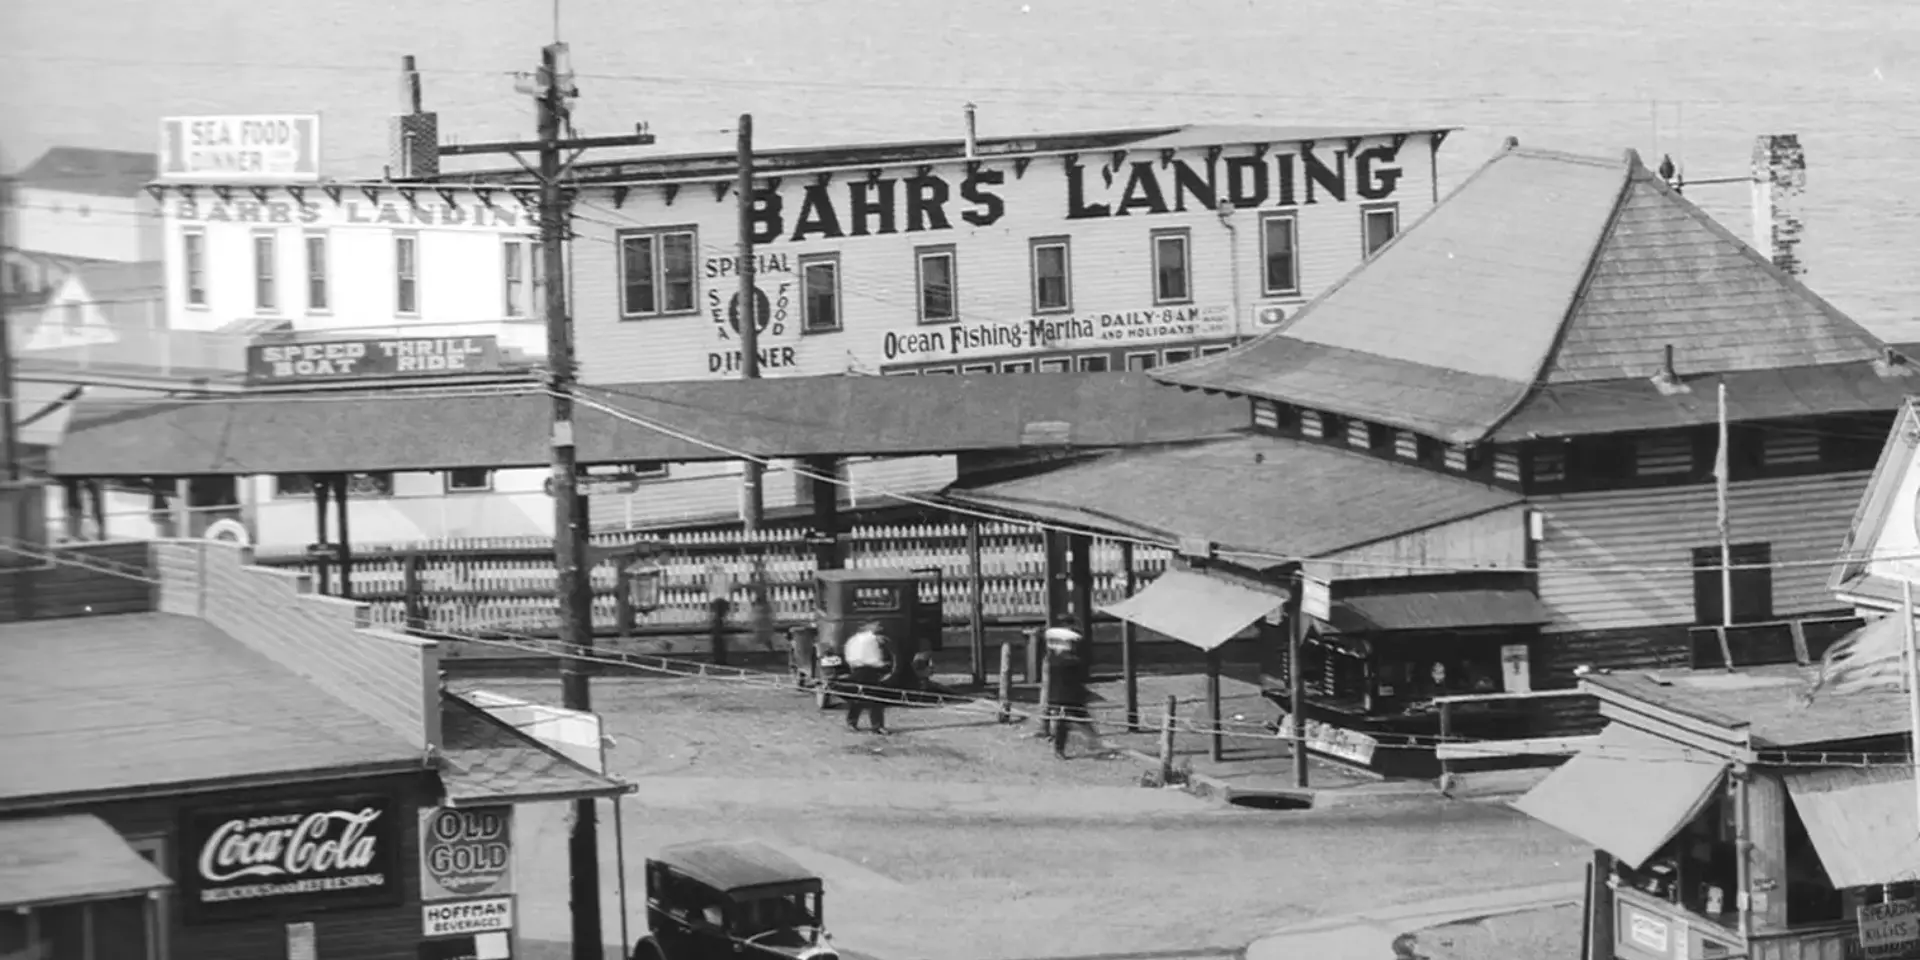 Bahrs Landing Written on a Building